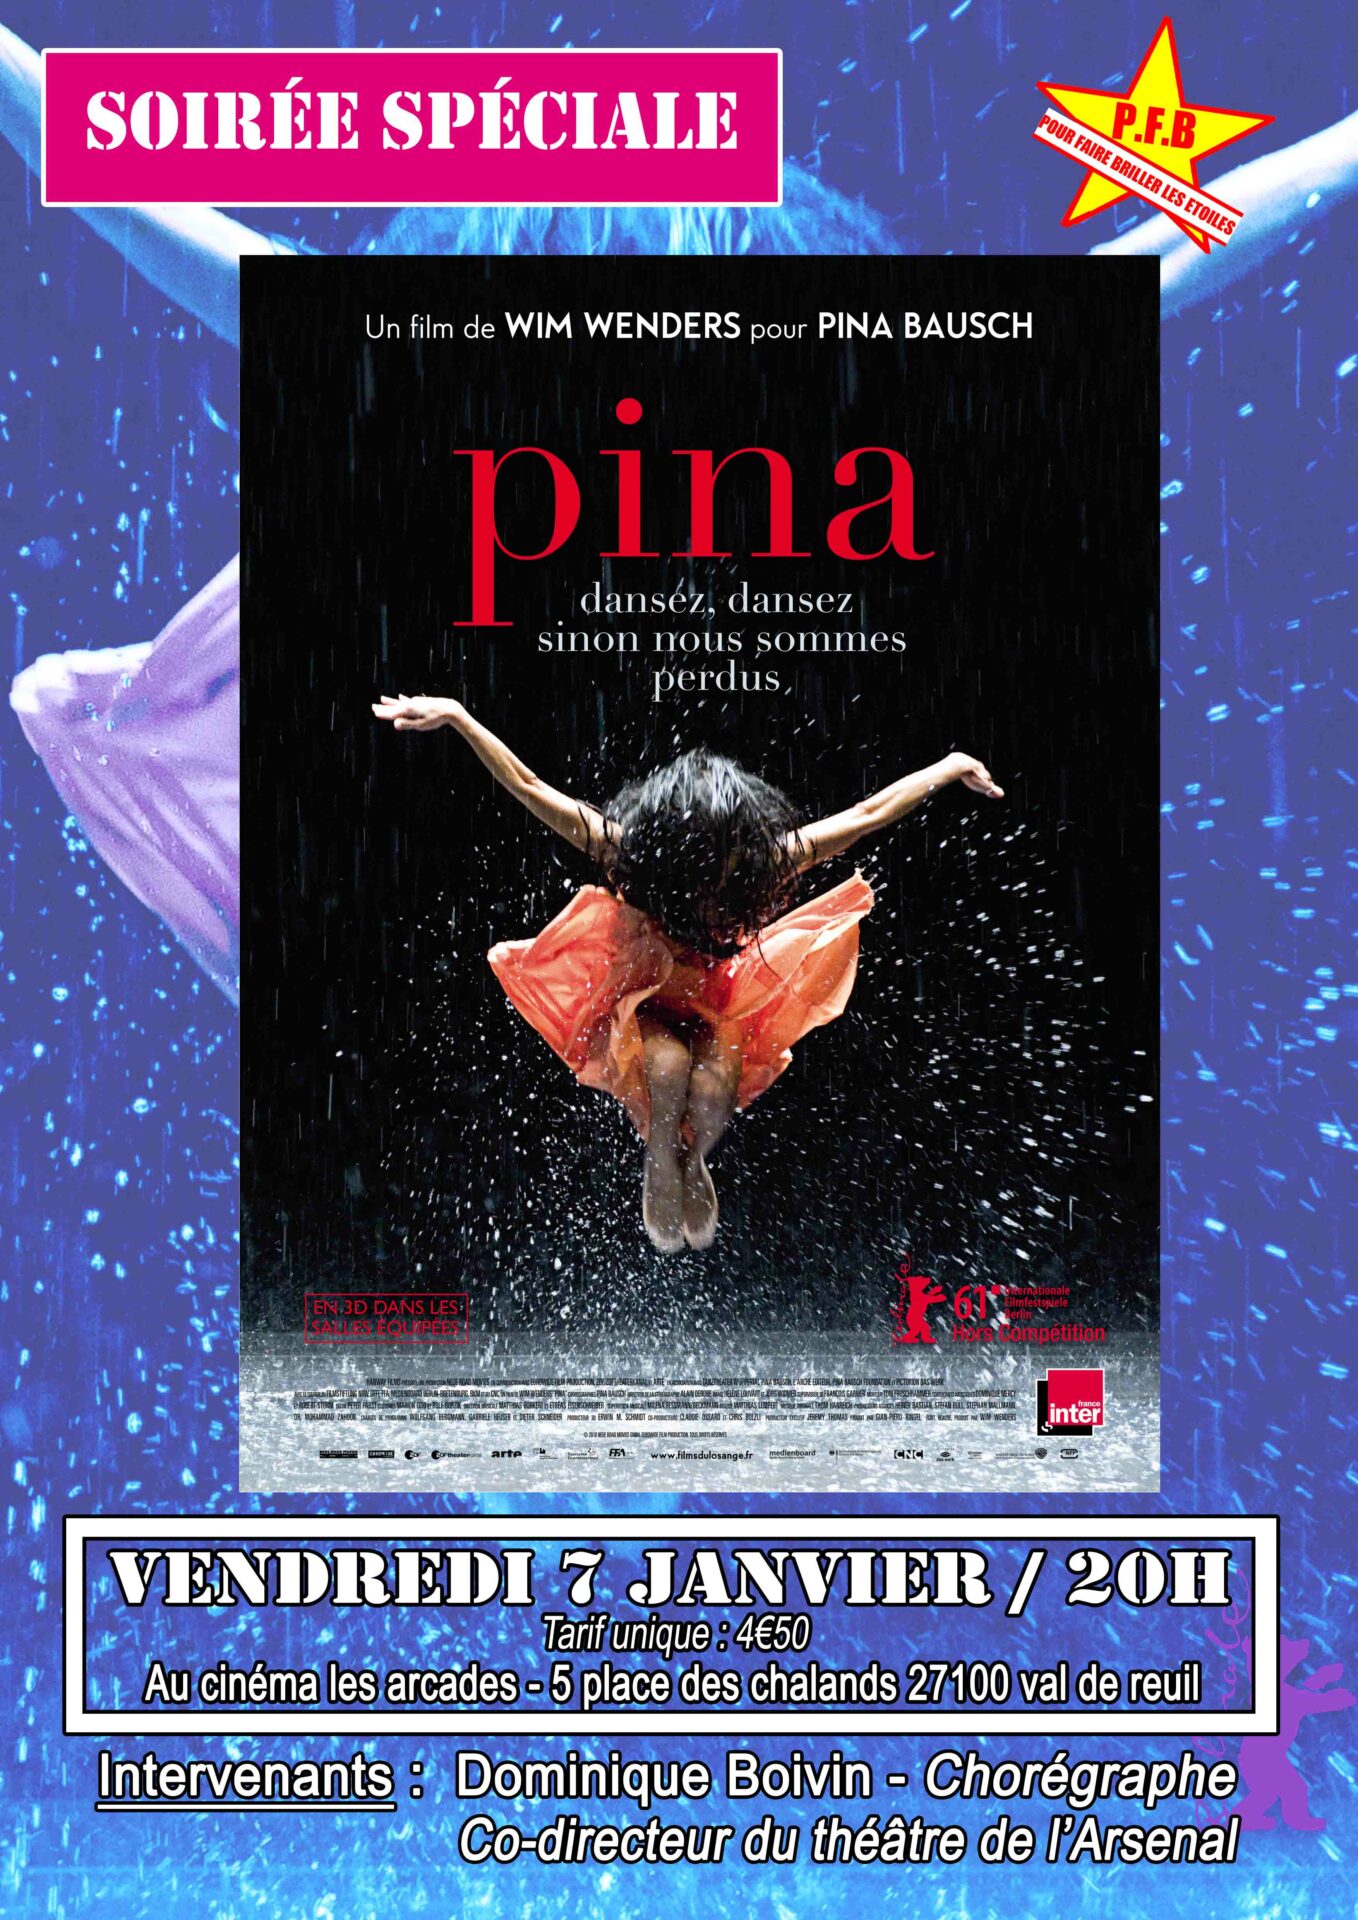 Cinéma Les Arcades : soirée spéciale autour du film “Pina”, Wim Wenders